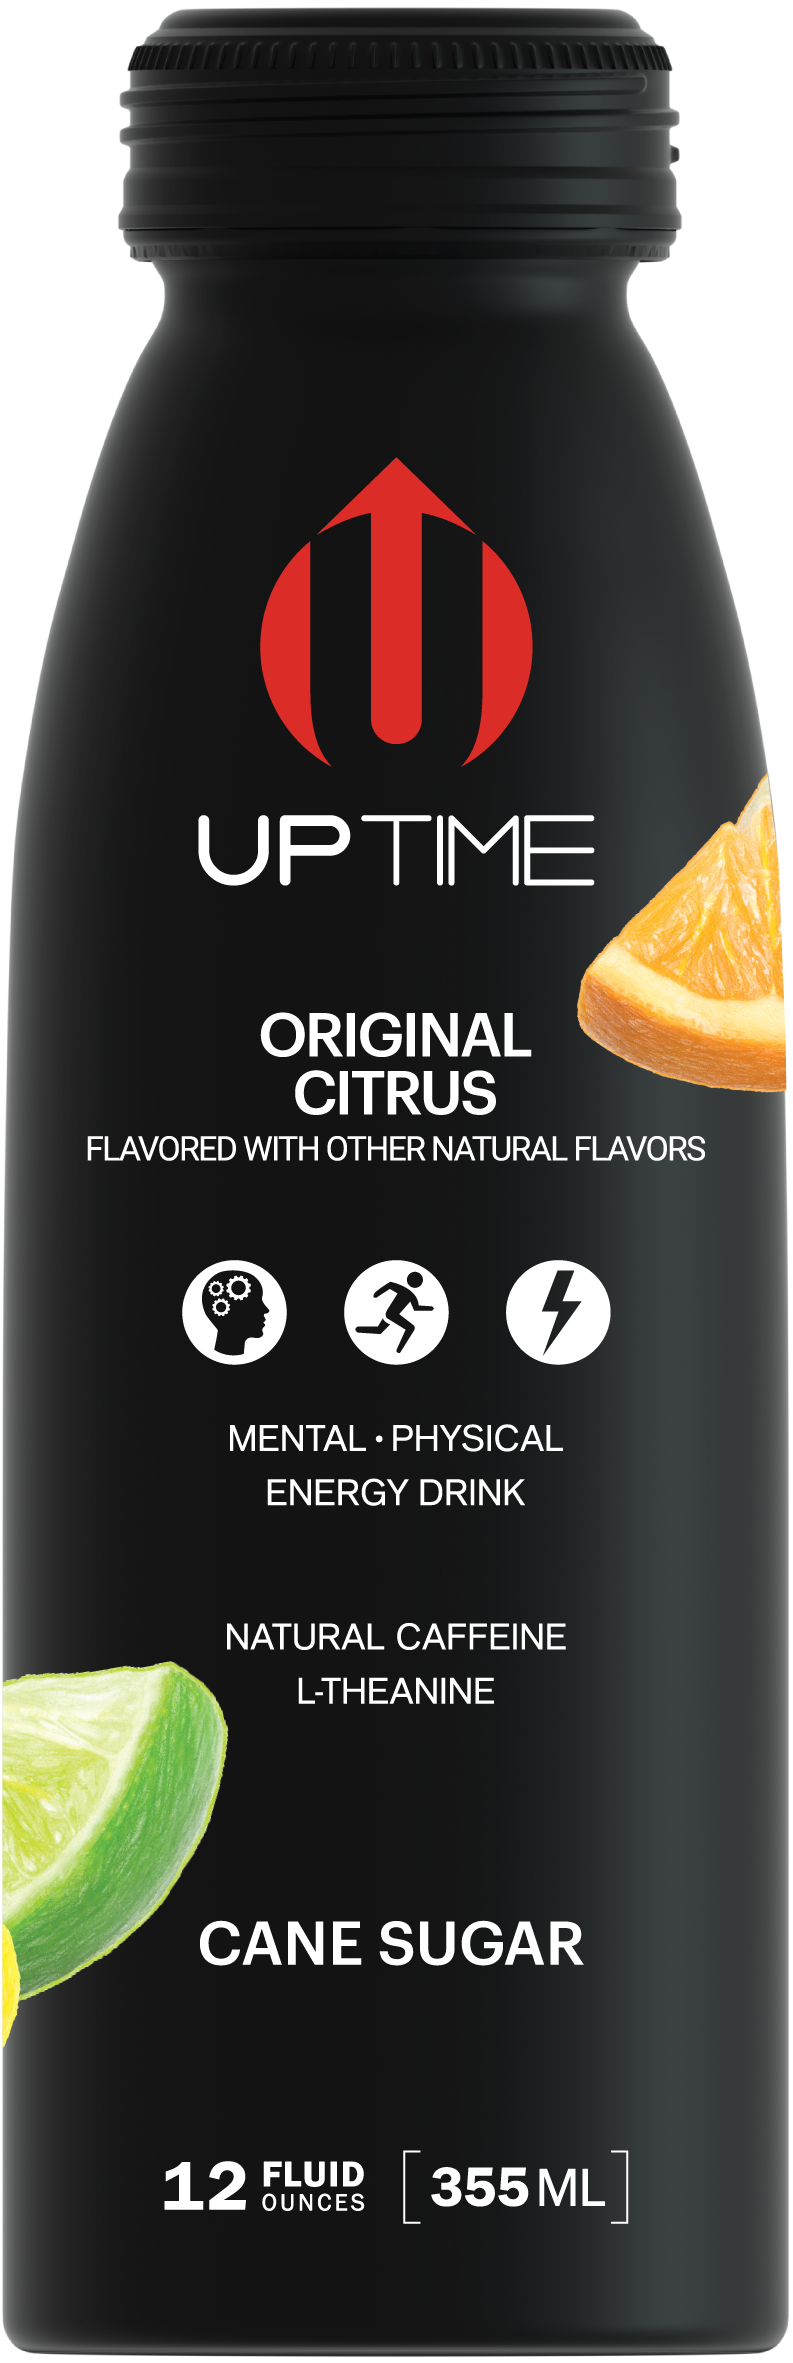 UPTIME Premium Energy Drink, Original Citrus - Cane Sugar, 12oz Bottles - Multi Pack